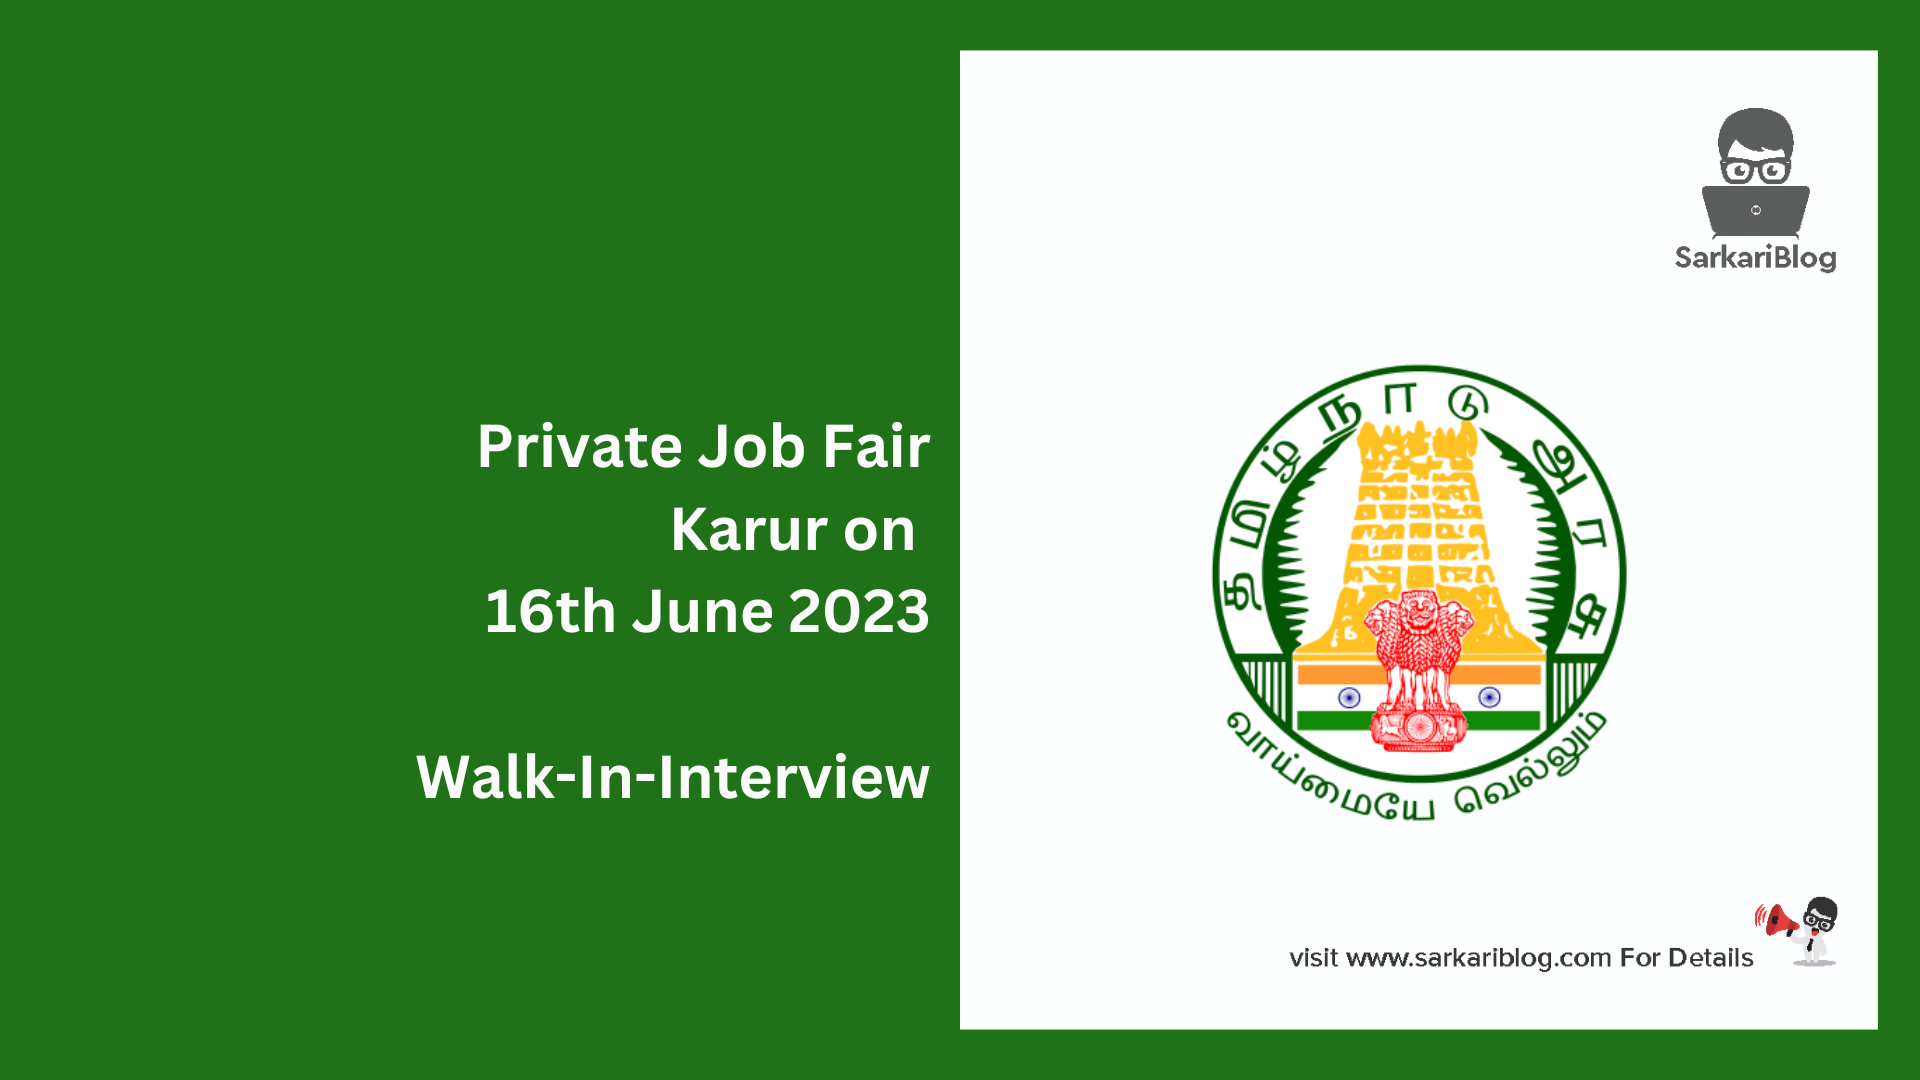 Private Job Fair Karur on 16th June 2023